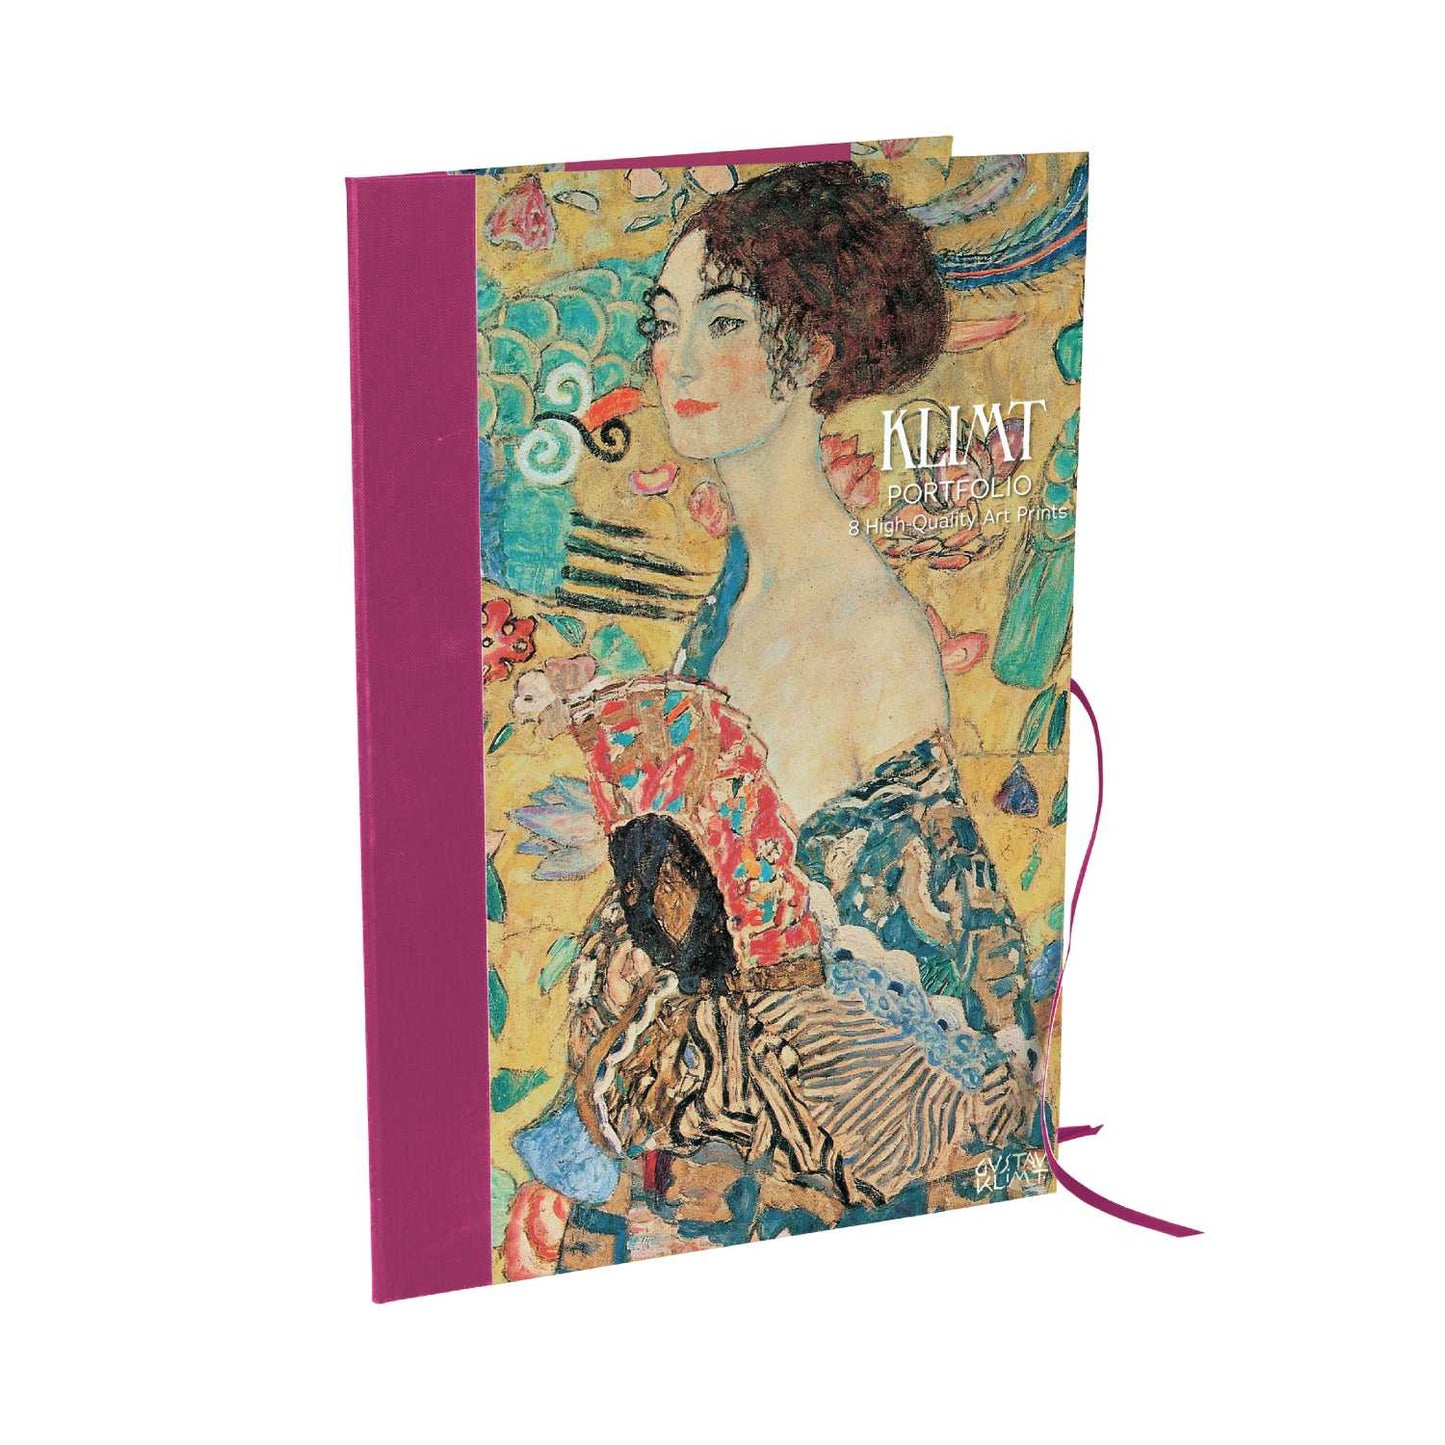 Portfolio (Art Prints) - Klimt